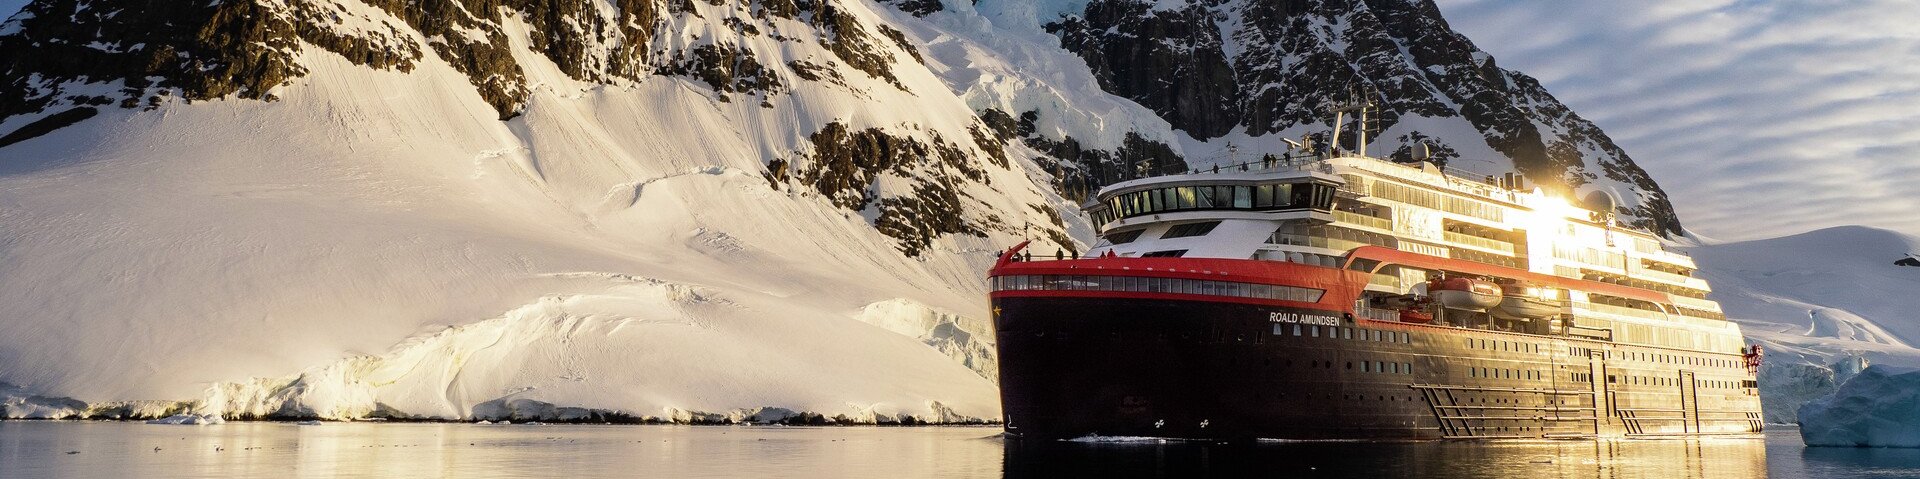 Expeditionsschiff von Hurtigruten im Lemaire Channel